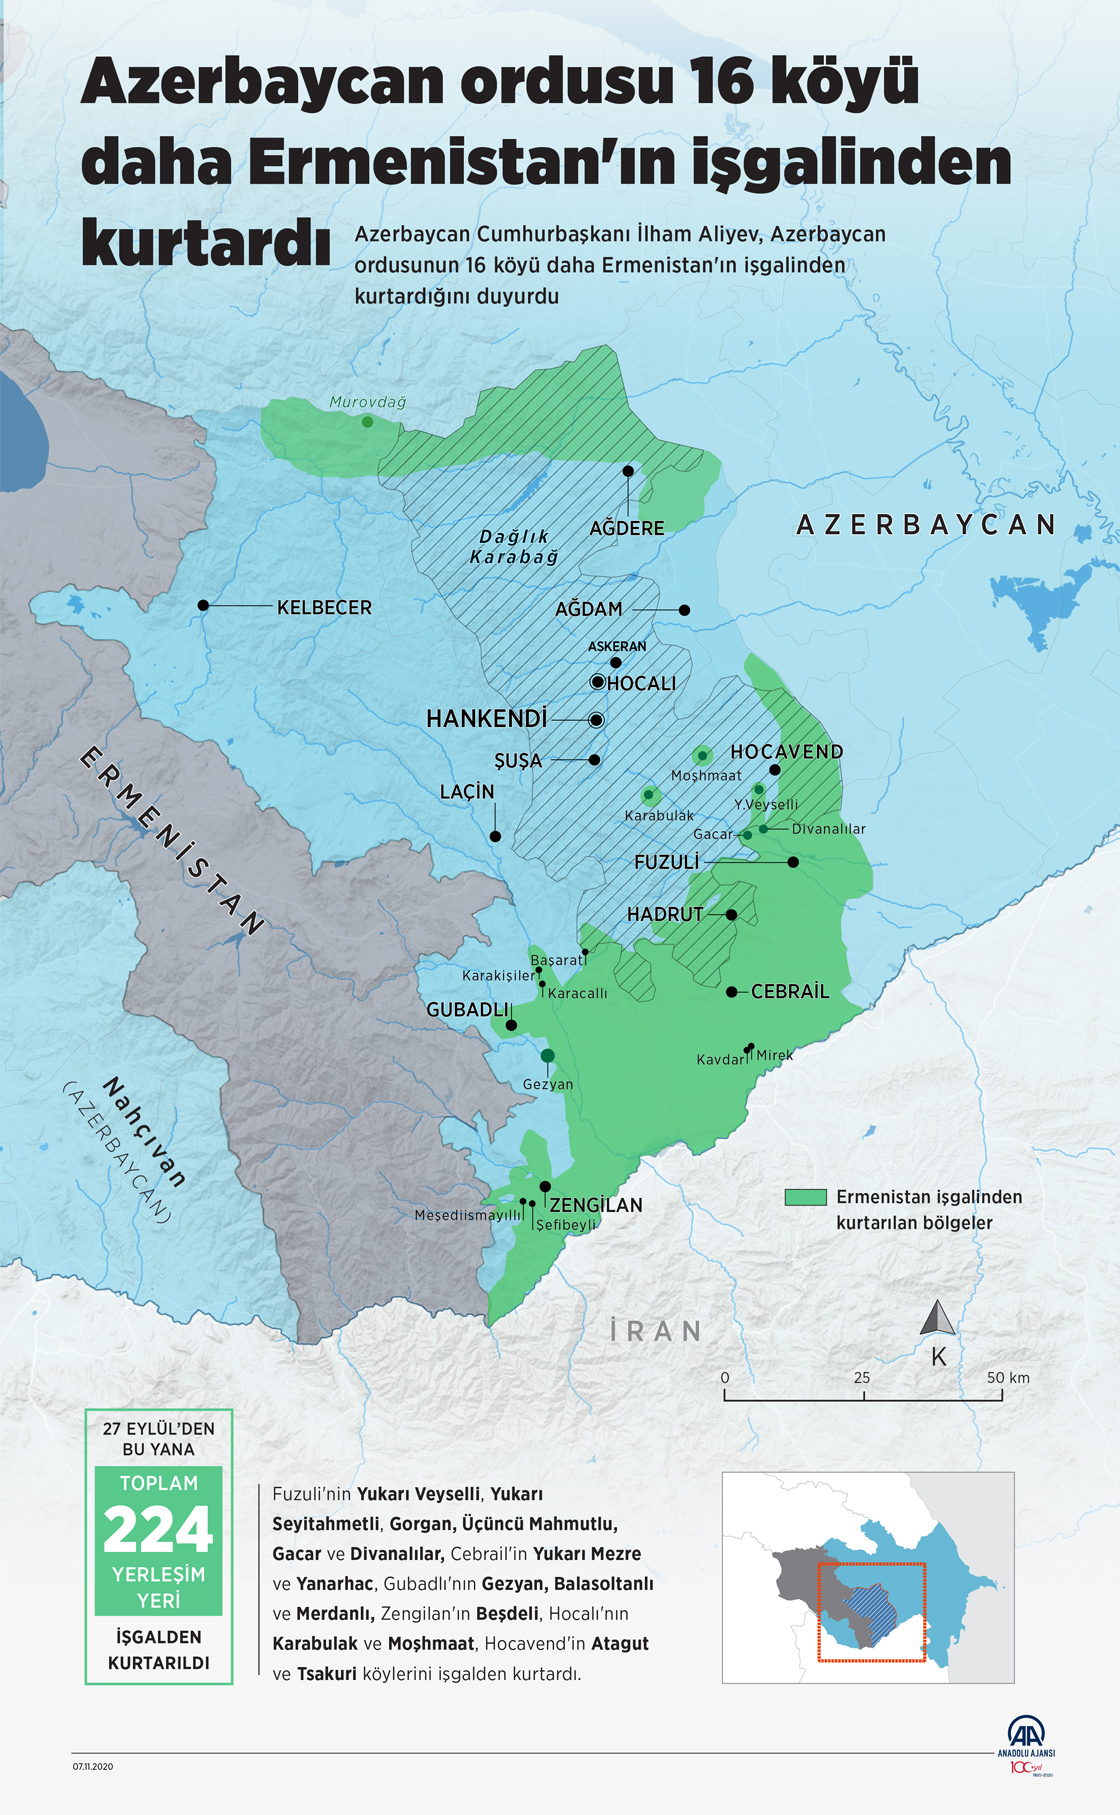 Azerbaycan ordusu, 16 köyü daha Ermenistan'ın işgalinden kurtardı